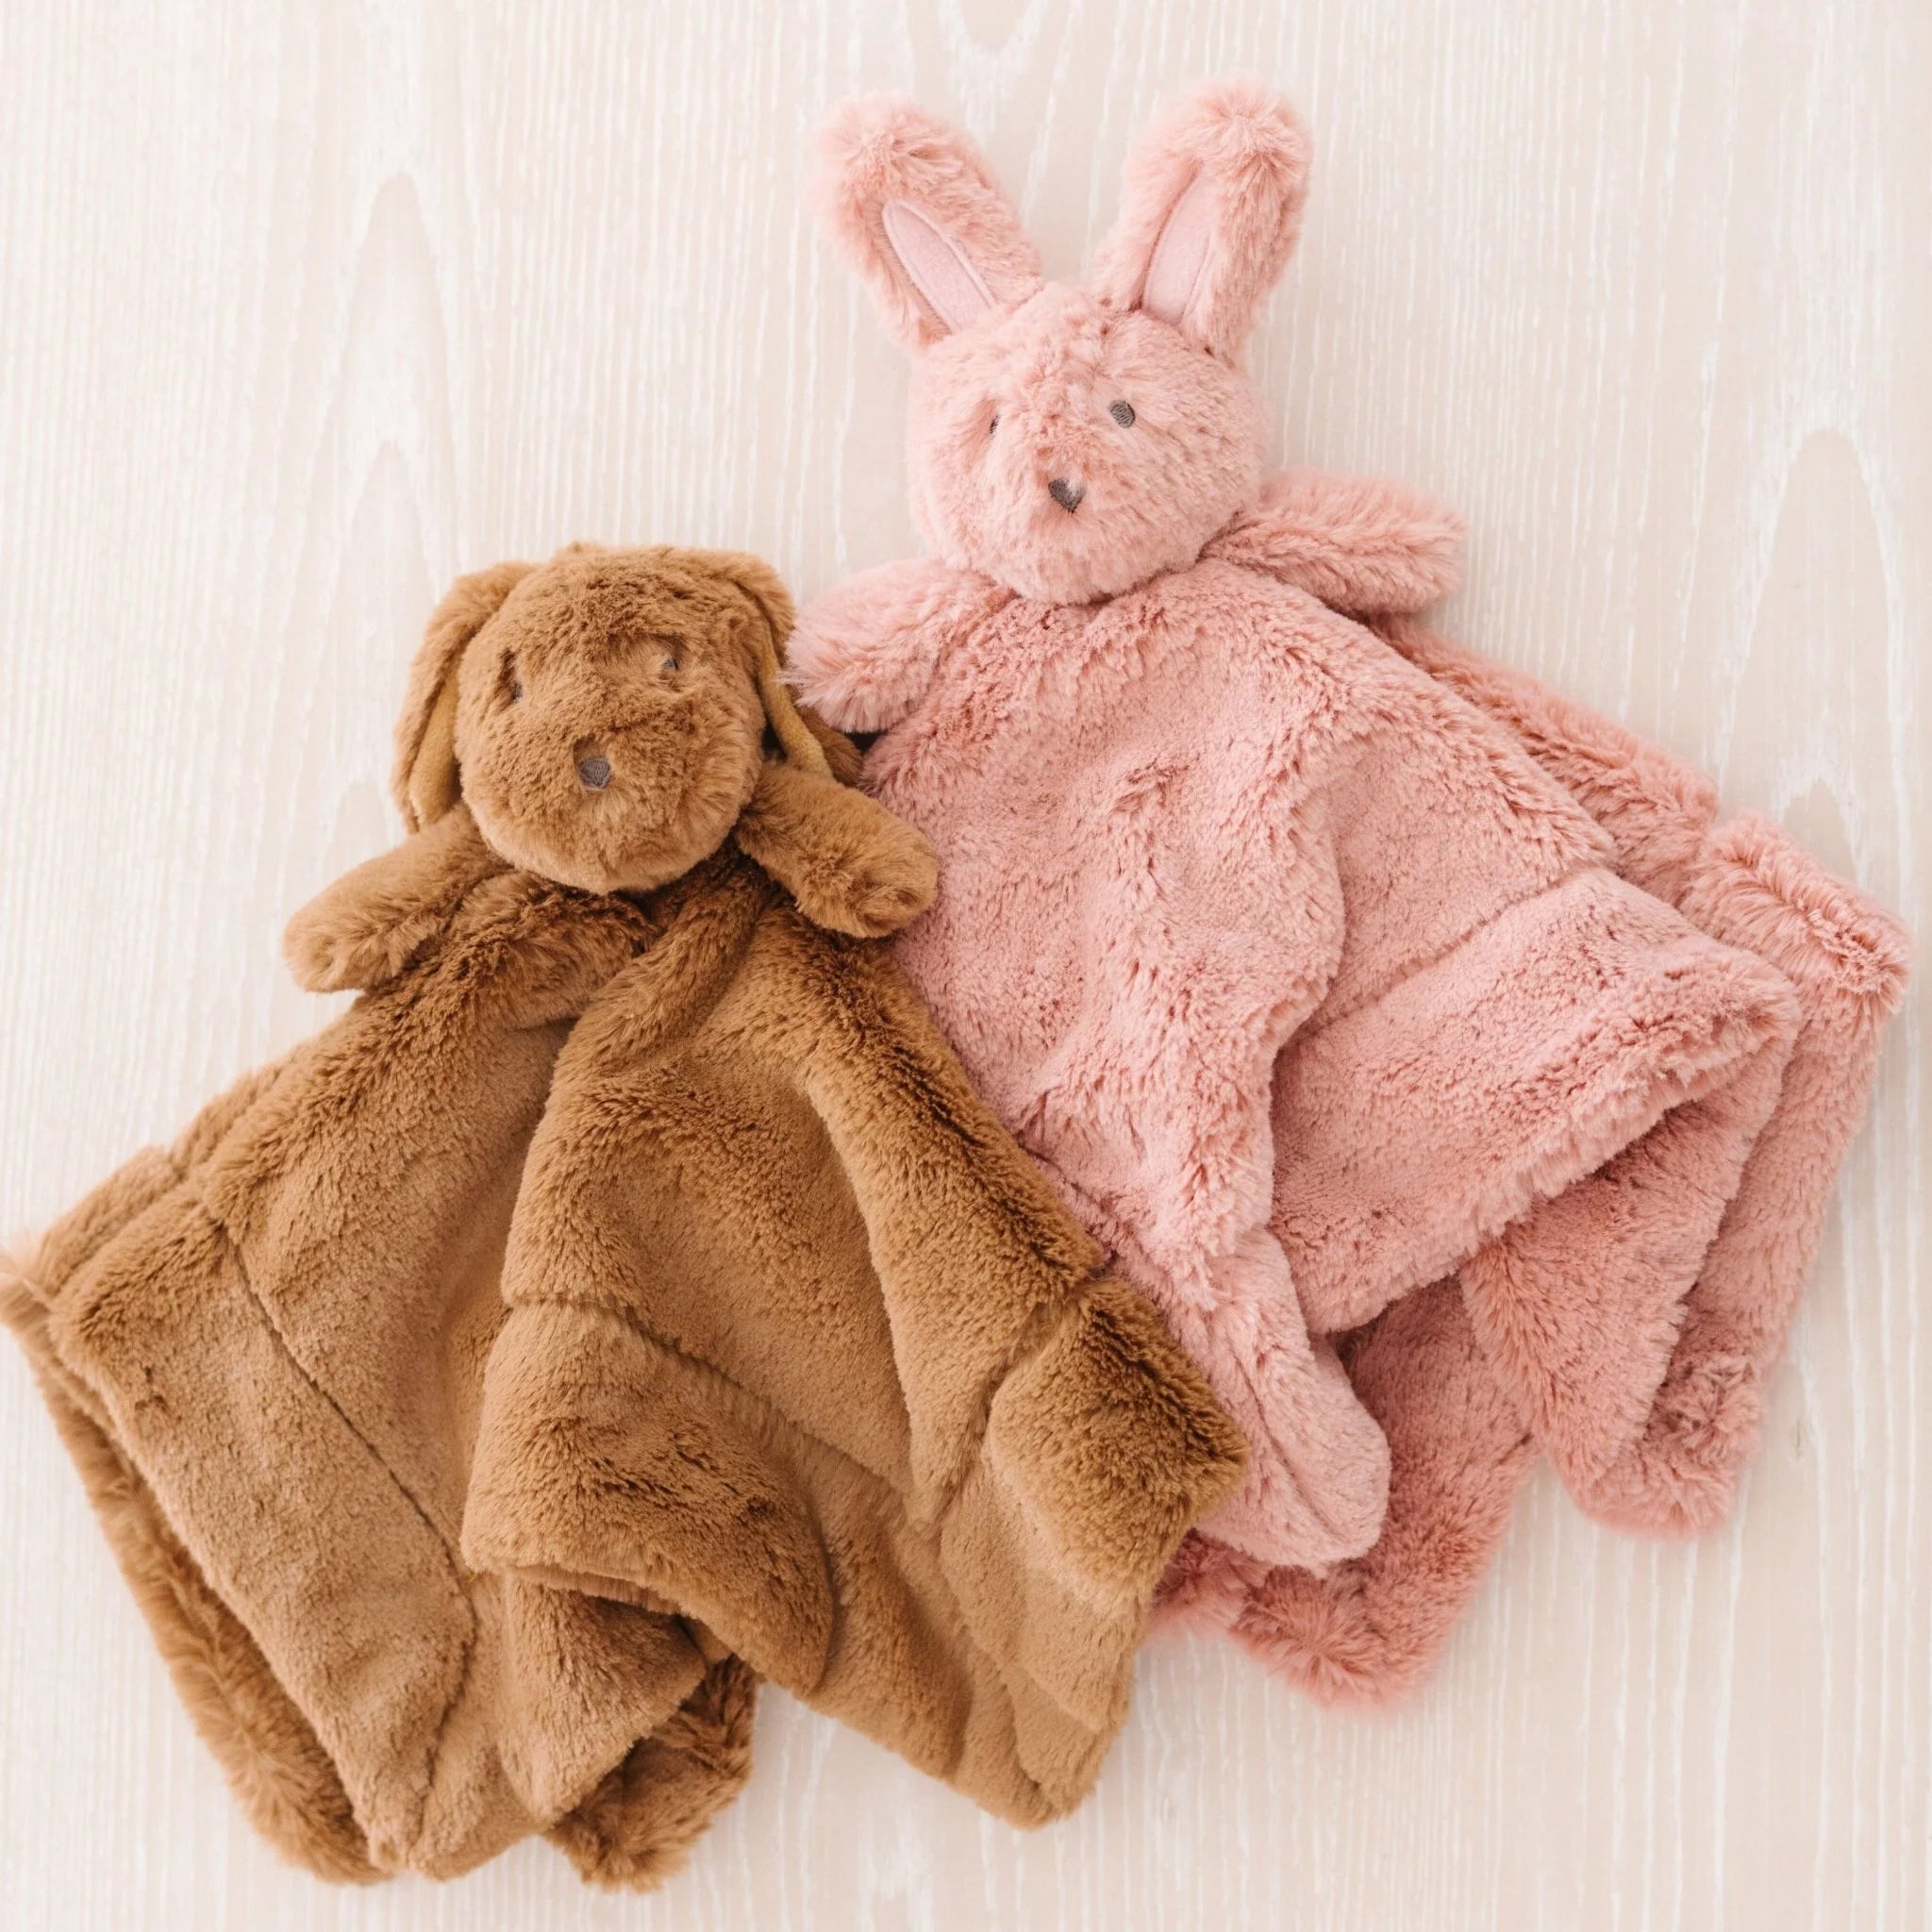 Bunny Stuffed Animal Lovey - Twinkle Twinkle Little One